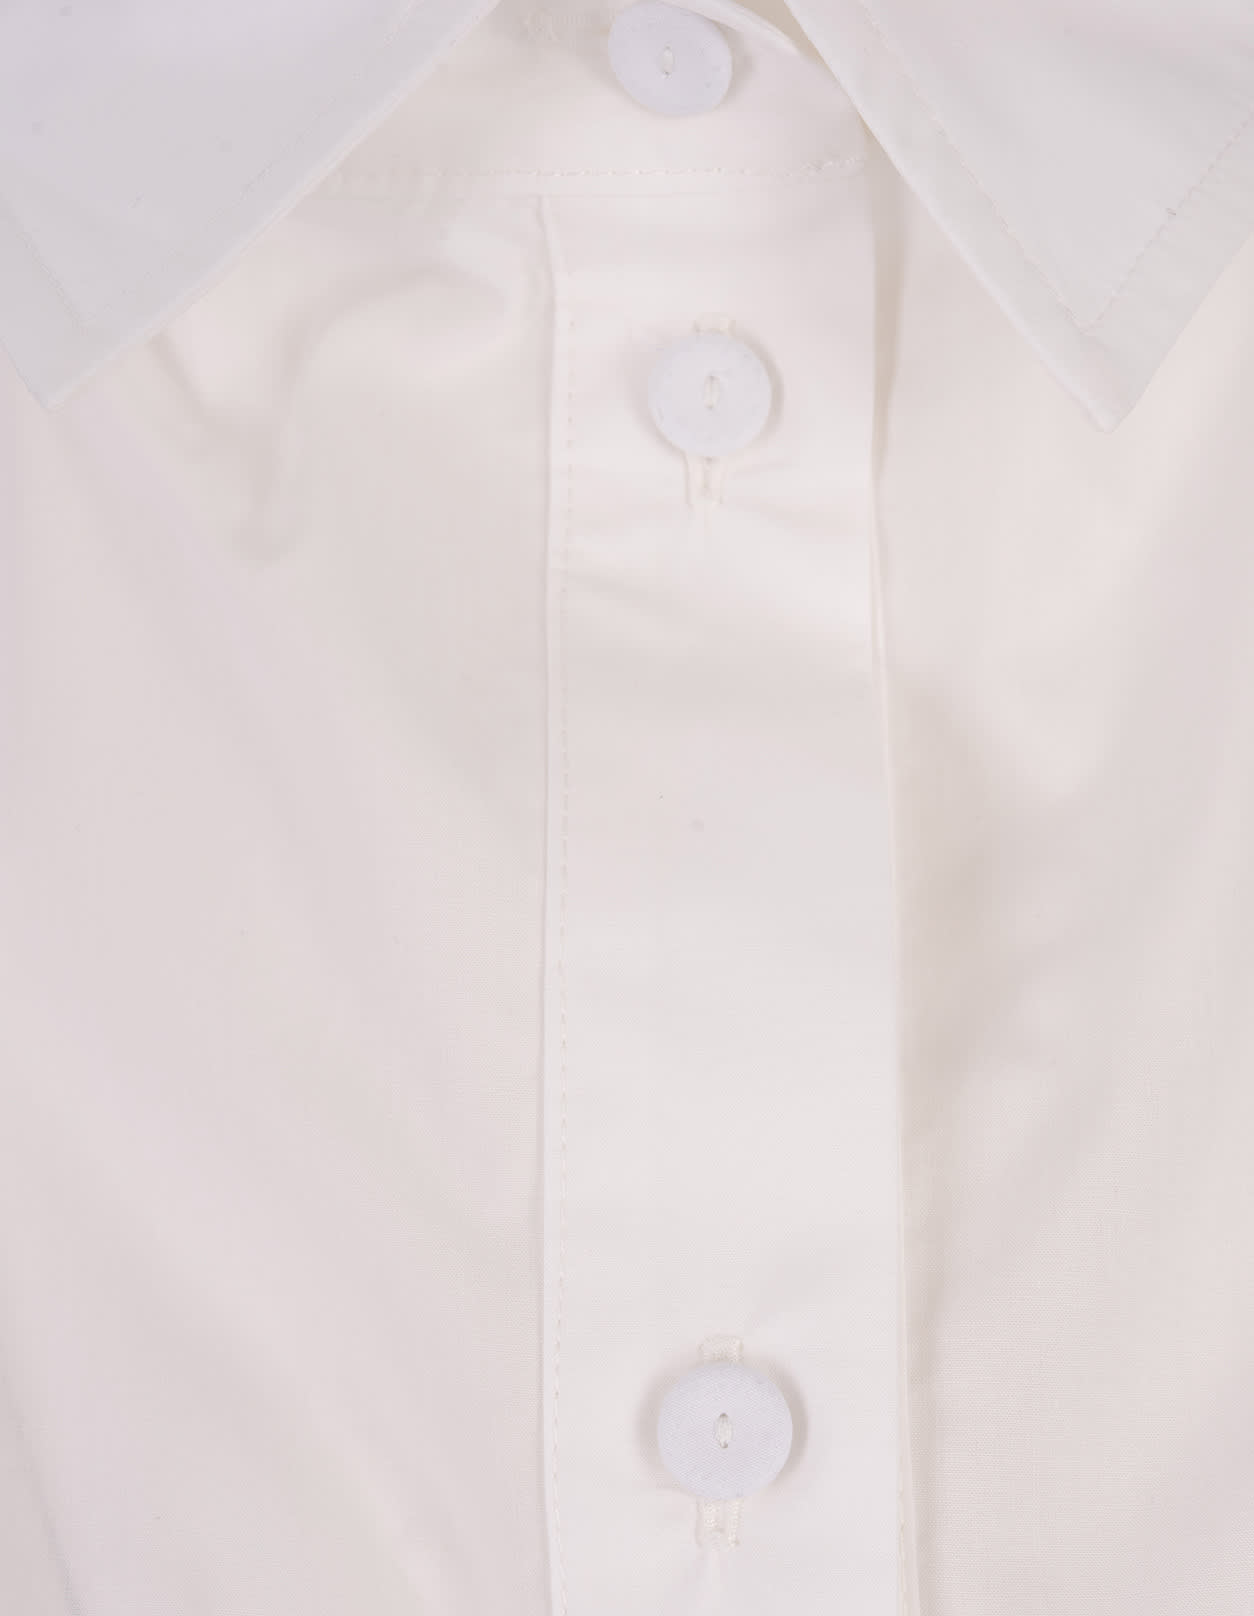 Shop Alessandro Enriquez White Cotton Shirt With Knot